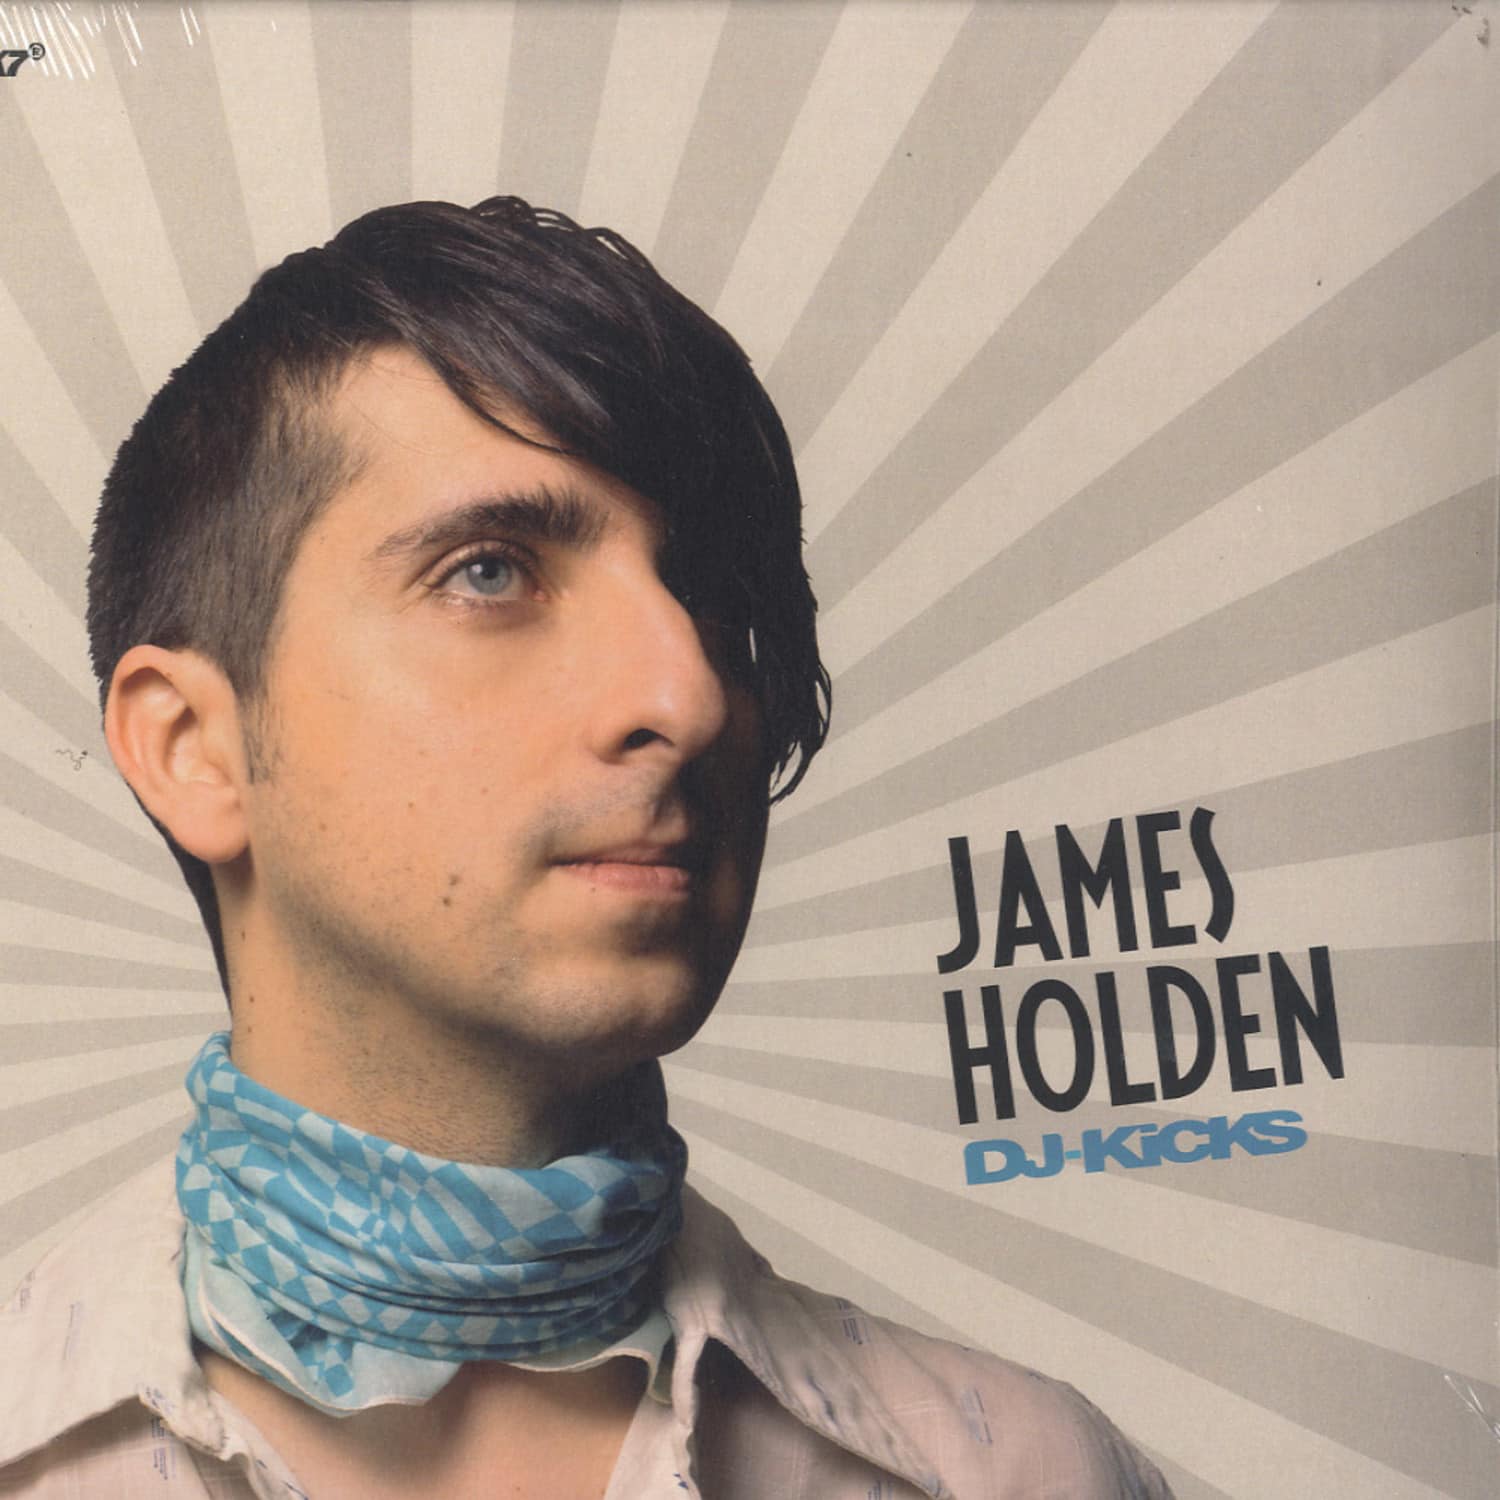 James Holden - DJ-KICKS 